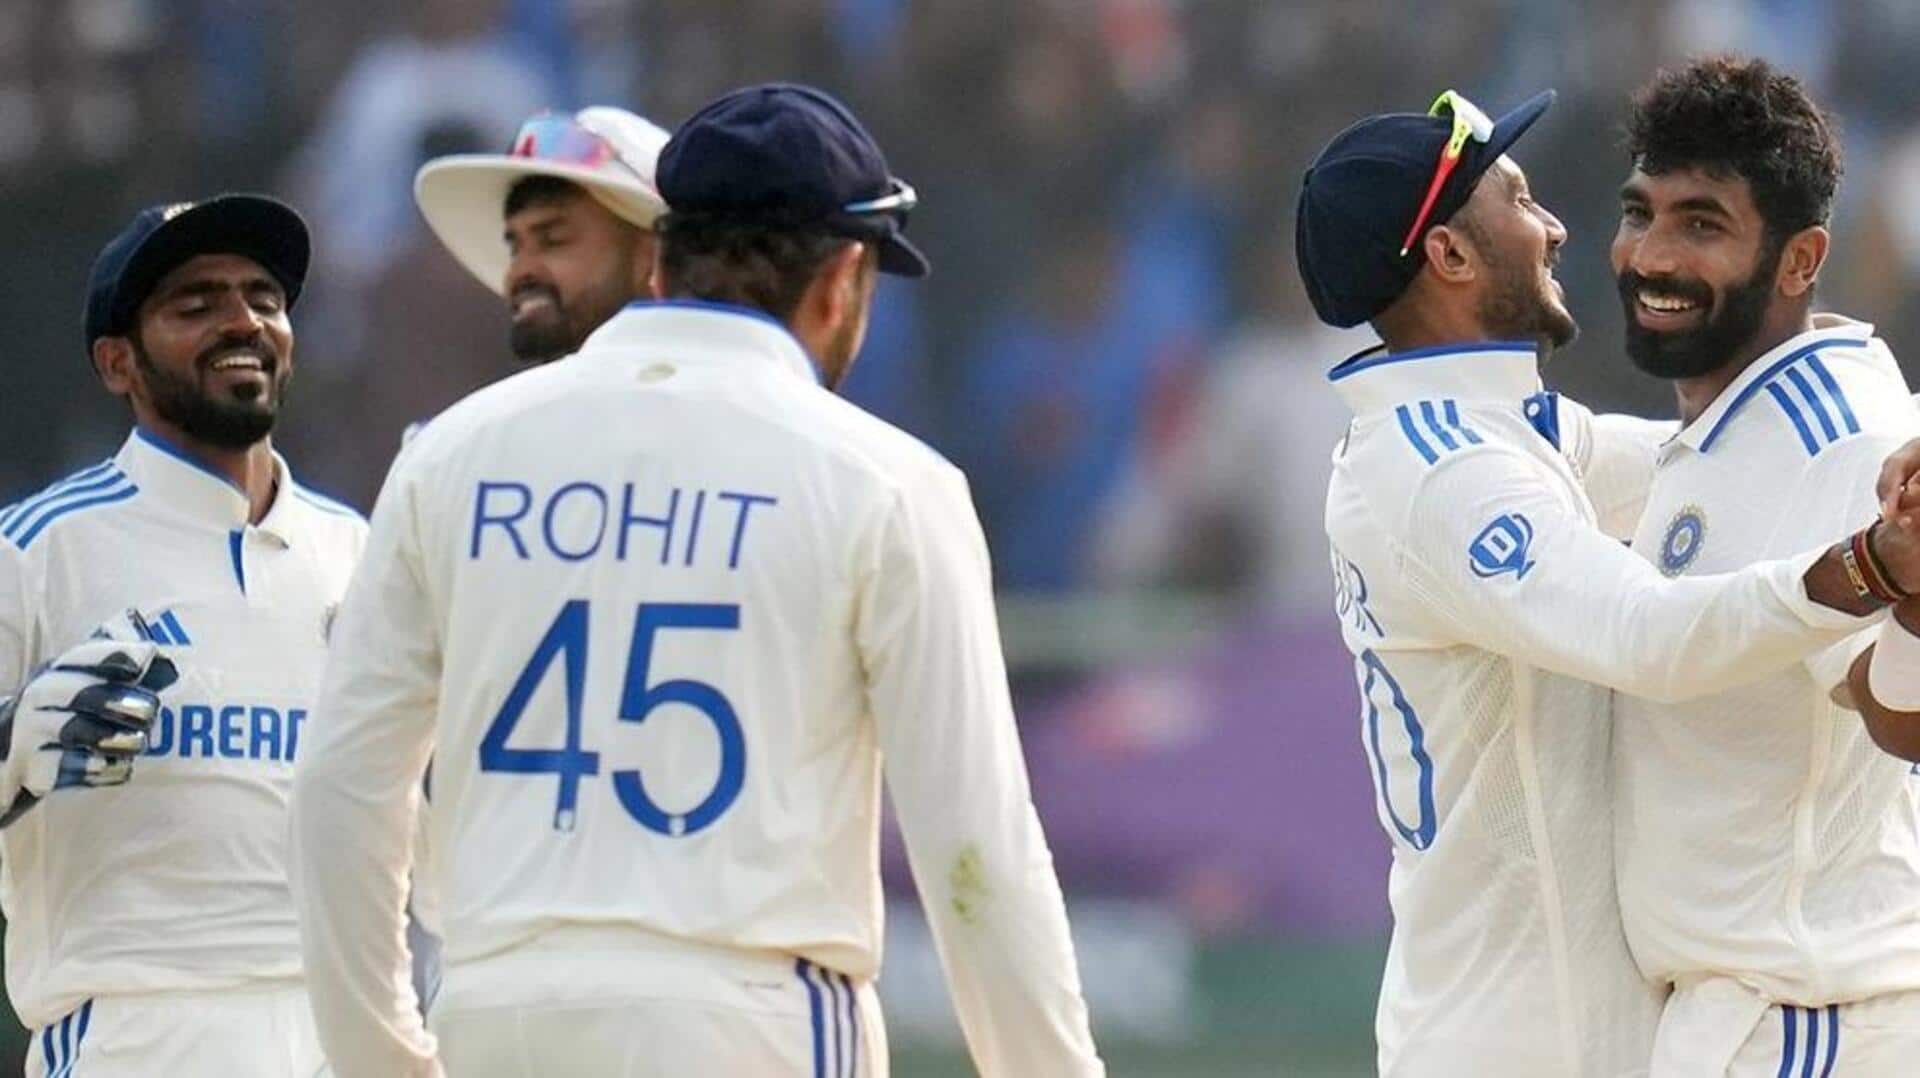 दूसरा टेस्ट: भारतीय क्रिकेट टीम मजबूत स्थिति में, इंग्लैंड के खिलाफ ली 171 रन की बढ़त